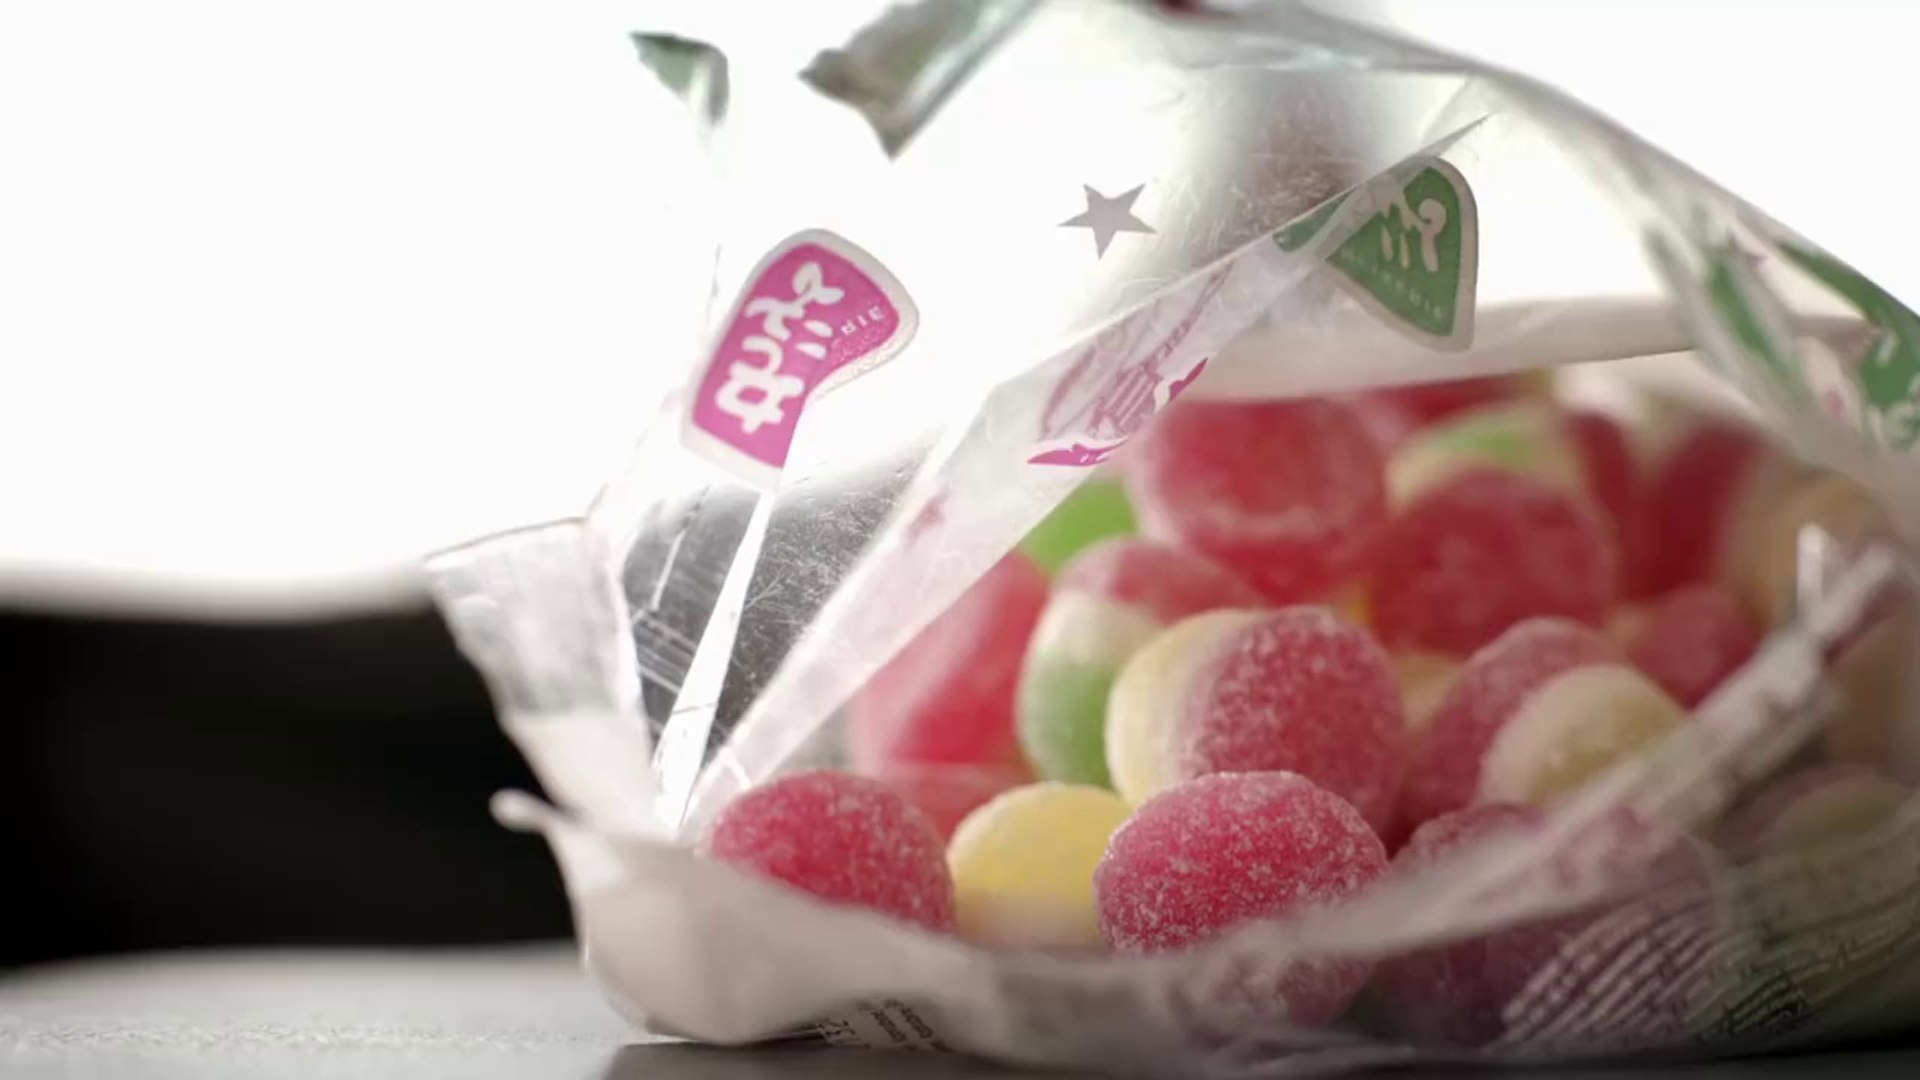 Comment sont fabriqués les bonbons en gélatine... La fin fait peur! - Vidéo  Dailymotion